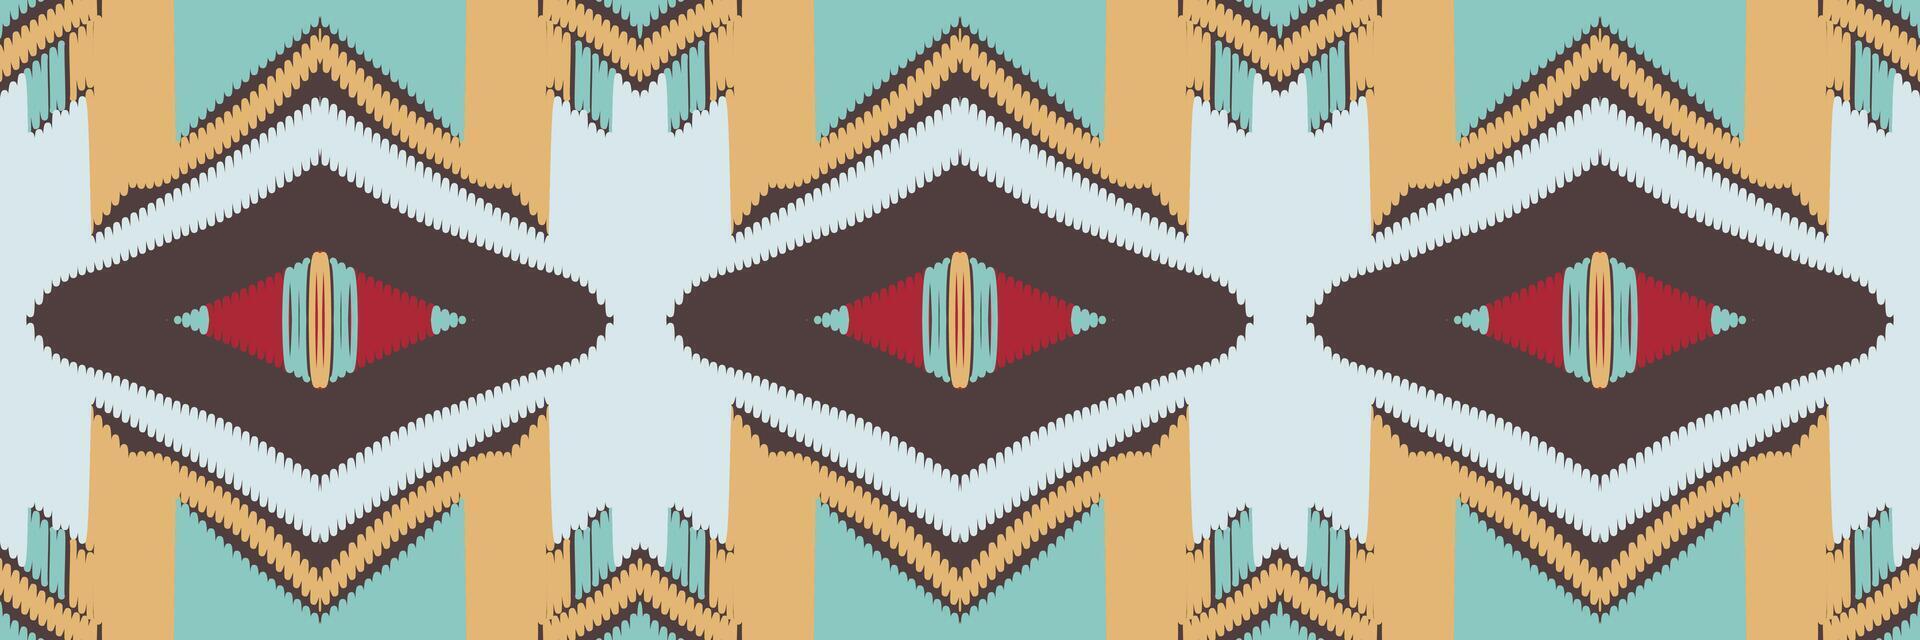 abstracte etnische patroon kunst. ikat naadloos patroon in stam. ontwerp voor achtergrond, behang, vectorillustratie, stof, kleding, tapijt, borduurwerk. vector